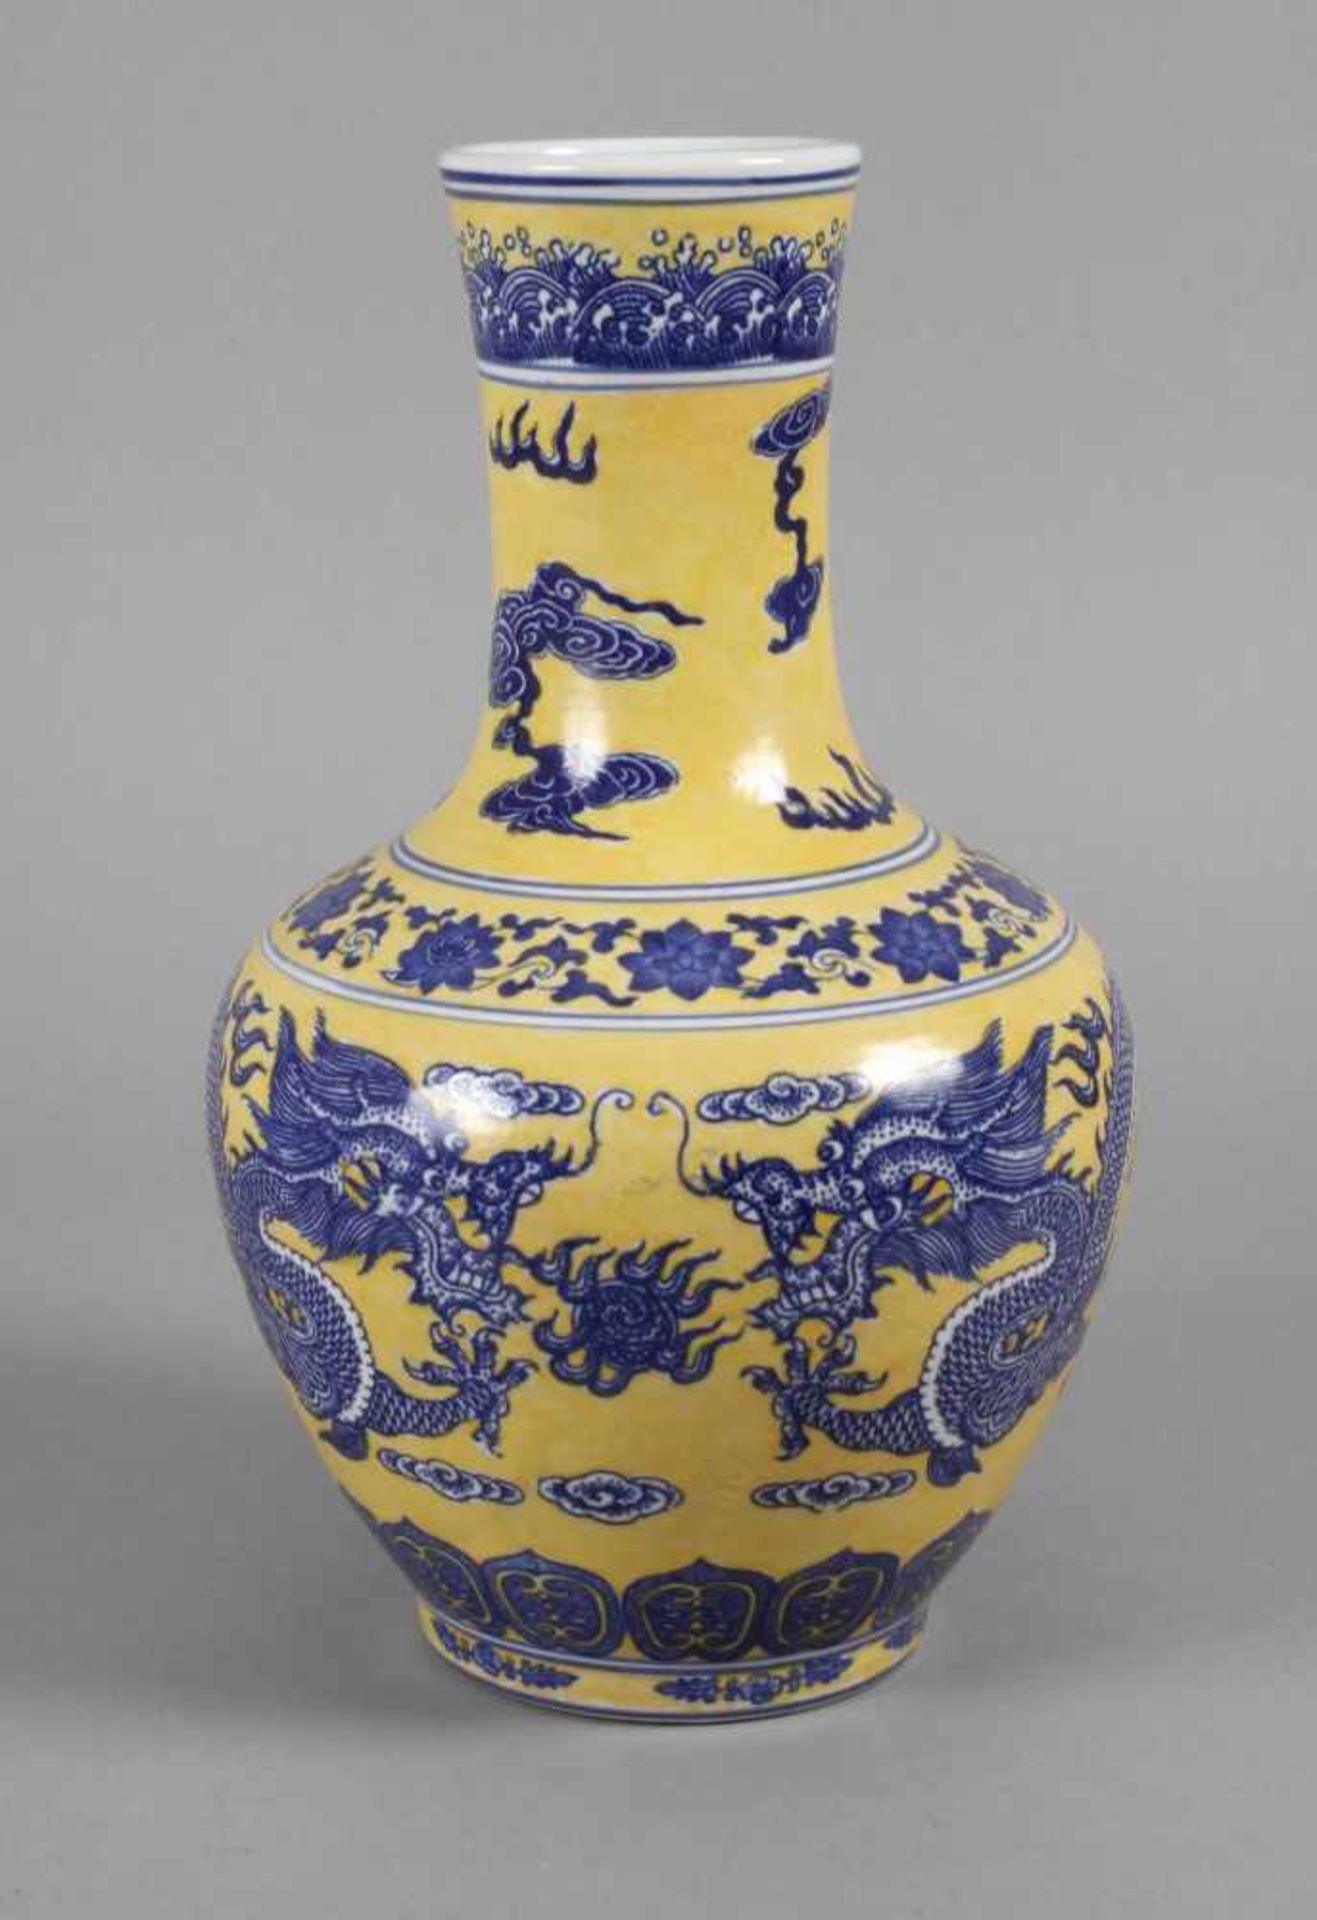 Vase ChinaAnfang 20. Jh., am Boden ungedeutete Vier-Zeichen-Marke, Porzellan in kobaltblauer